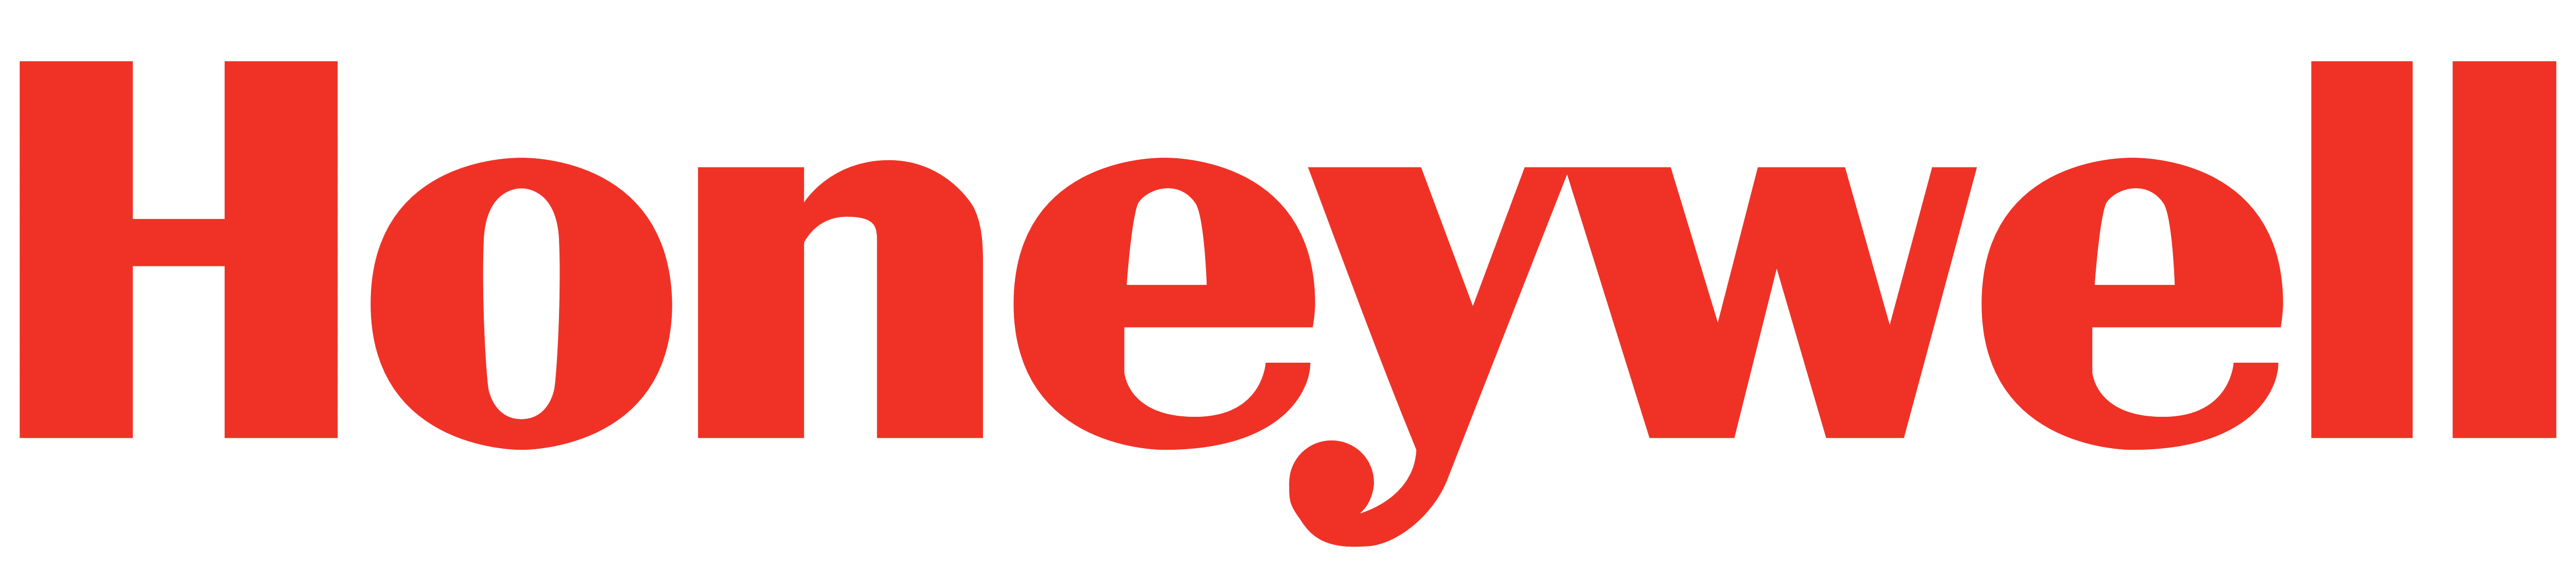 логотип honeywell